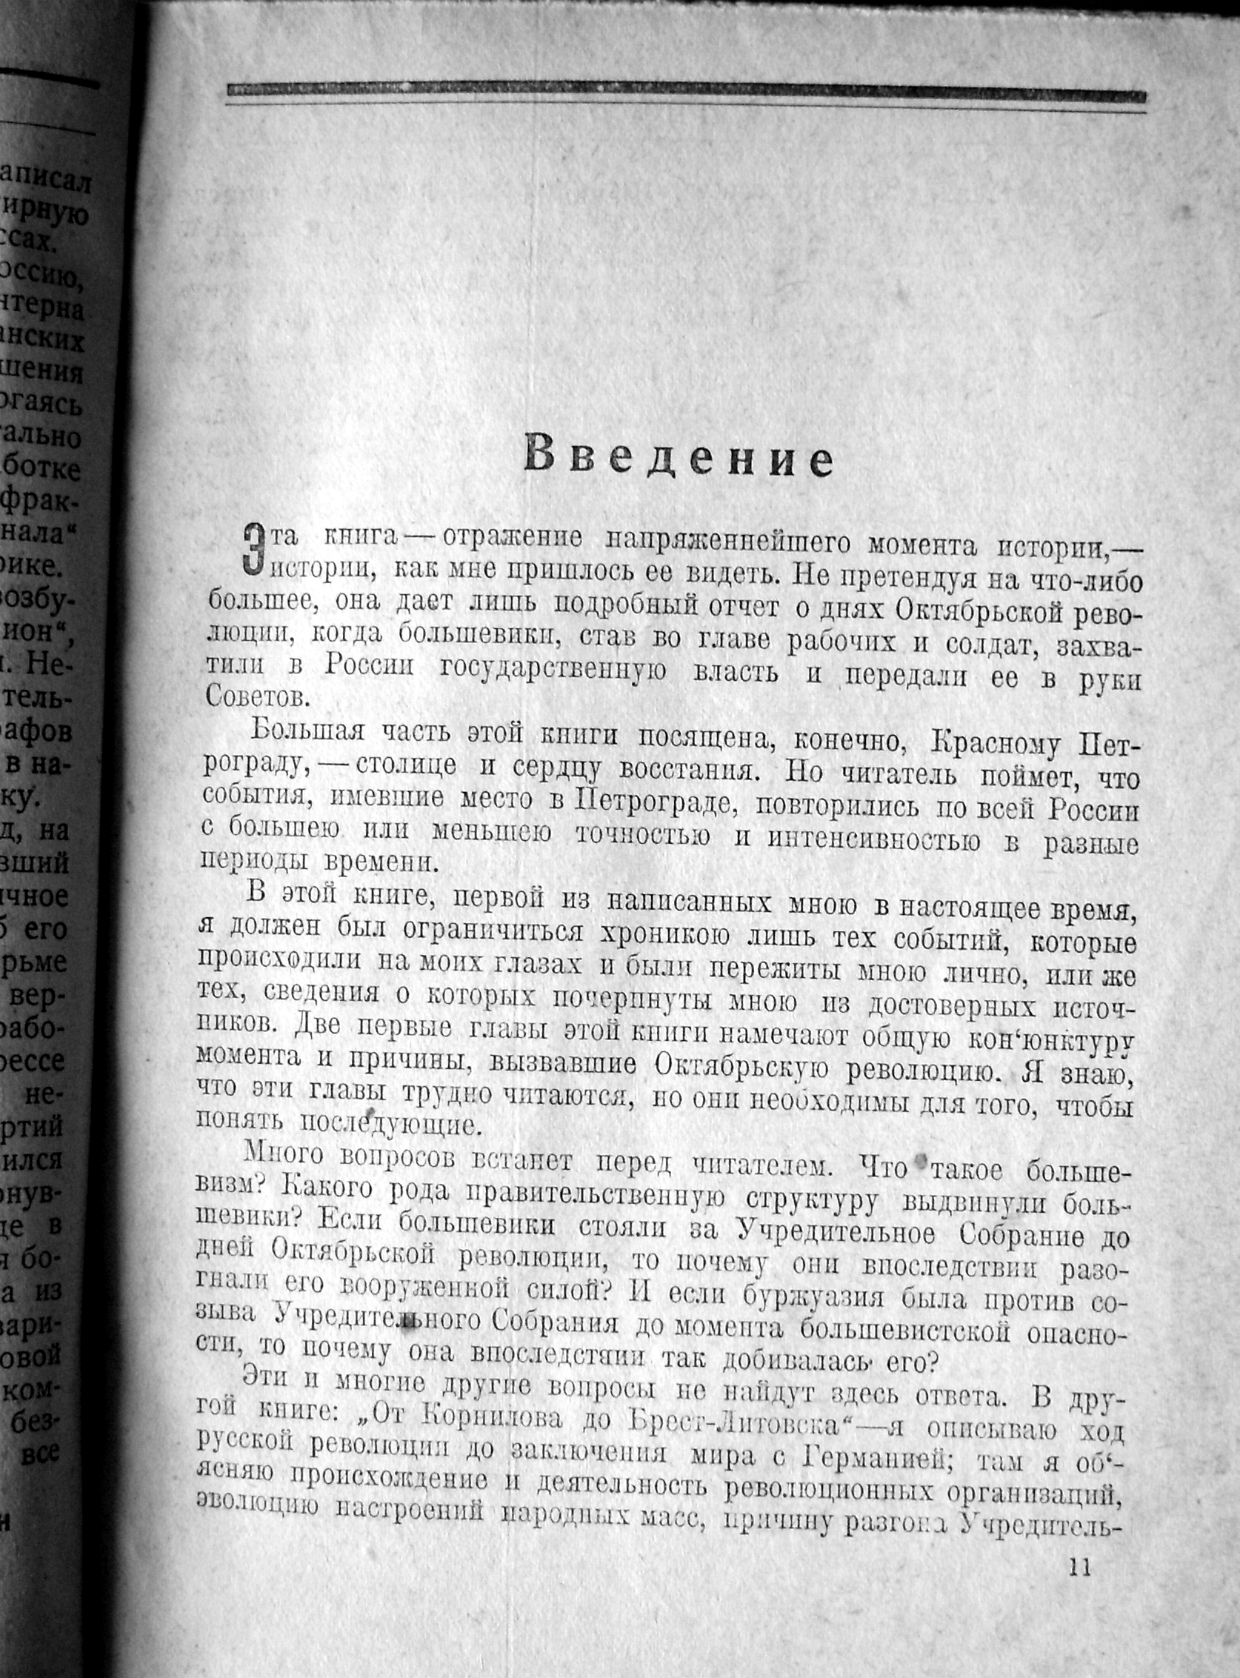 Редкое  издание  Джона Рида «Десять дней  в городе Москва, фото 3, стоимость: 3 000 руб.